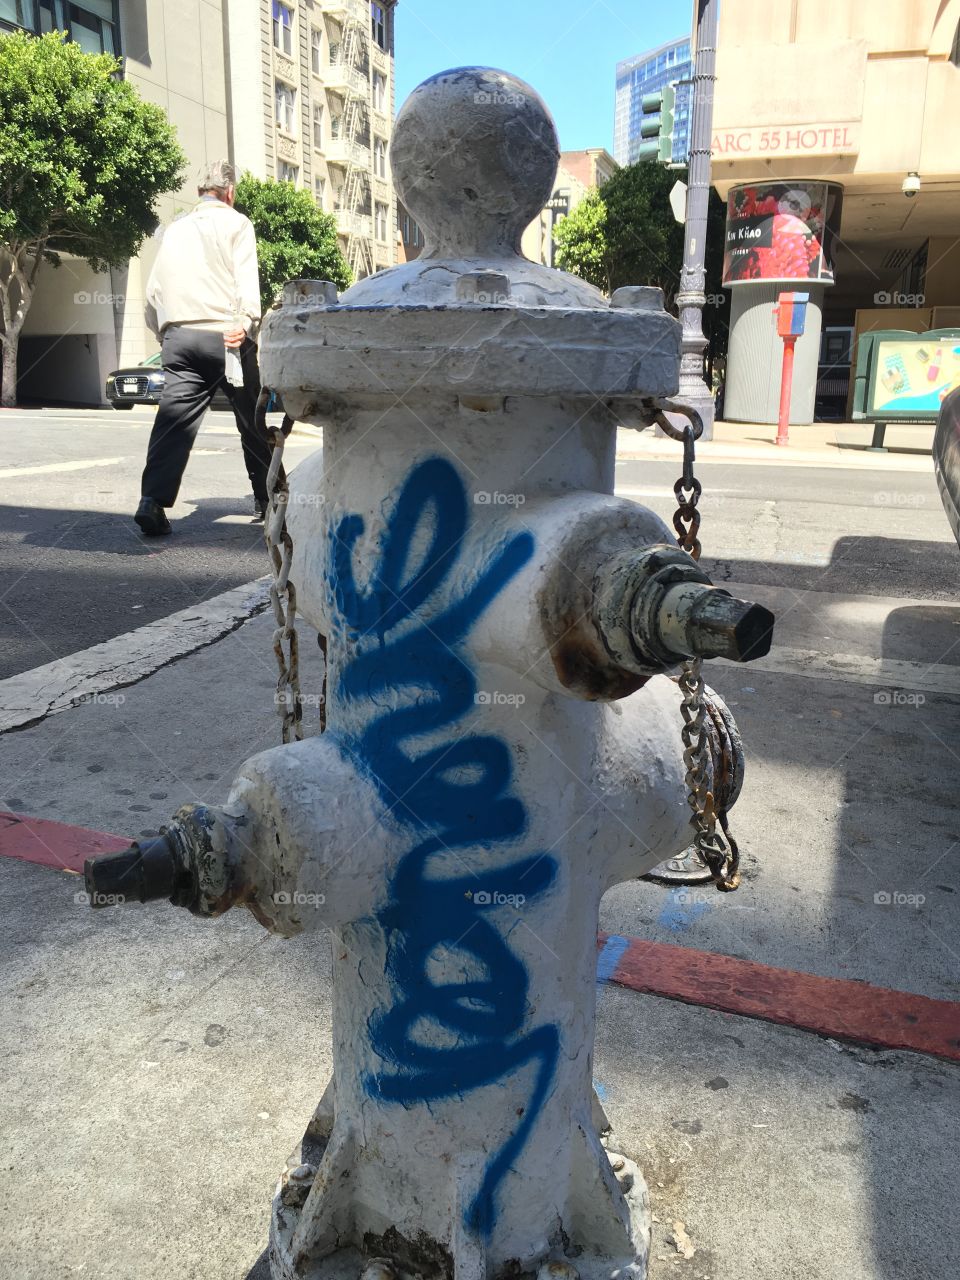 Urban graffiti on a fire hydrant in San Francisco. 